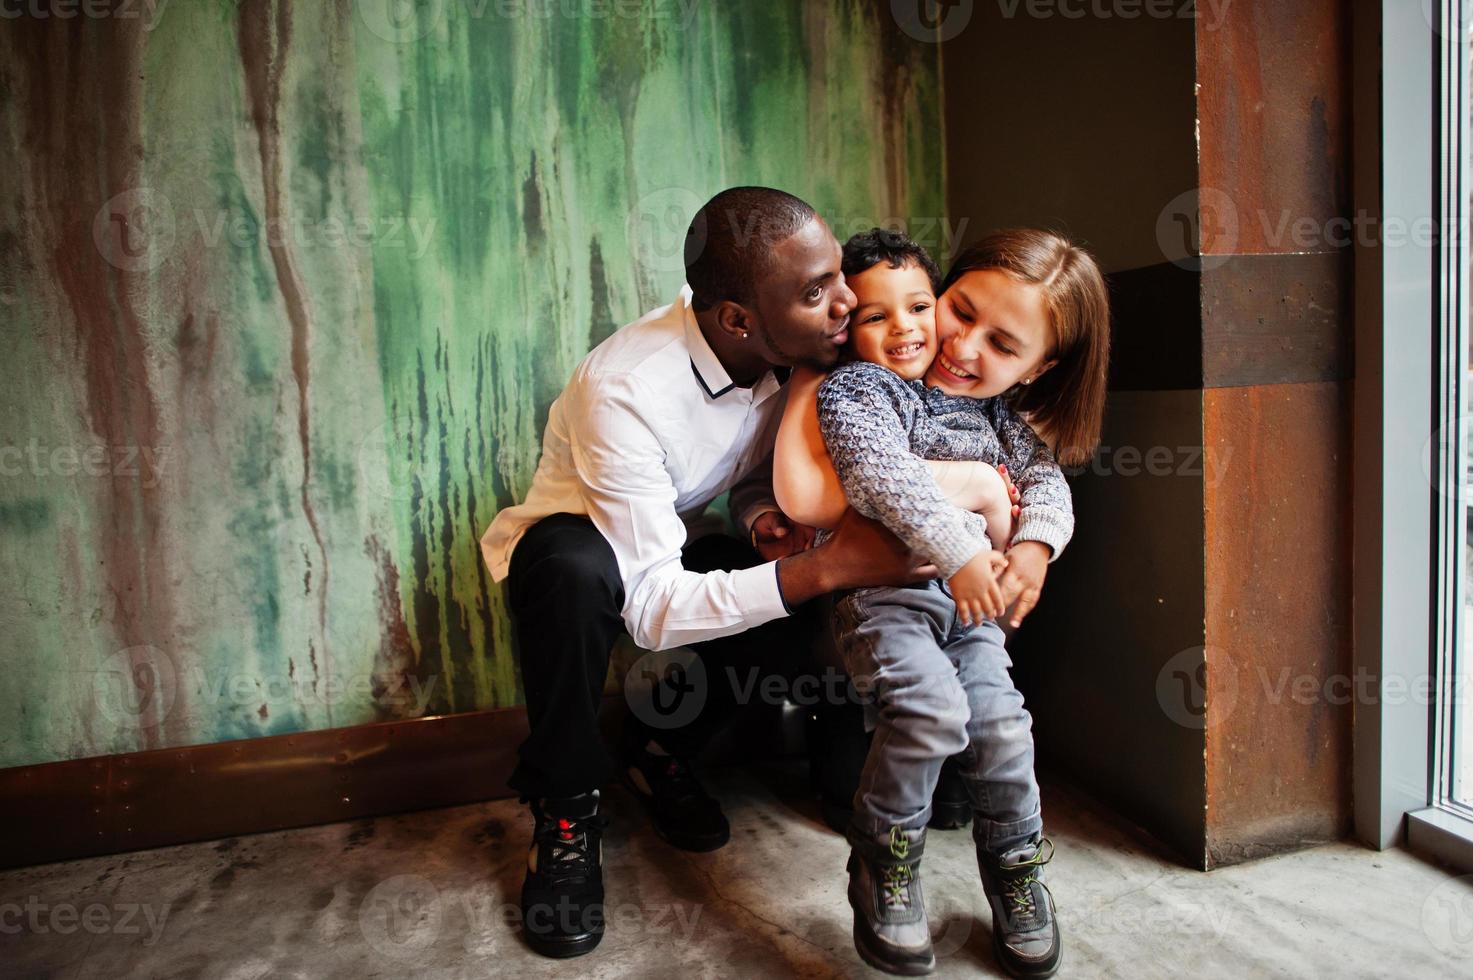 contento multietnico famiglia con ragazzo ragazzo trascorrere tempo a ristorante. relazioni di africano uomo e bianca europeo donna. foto